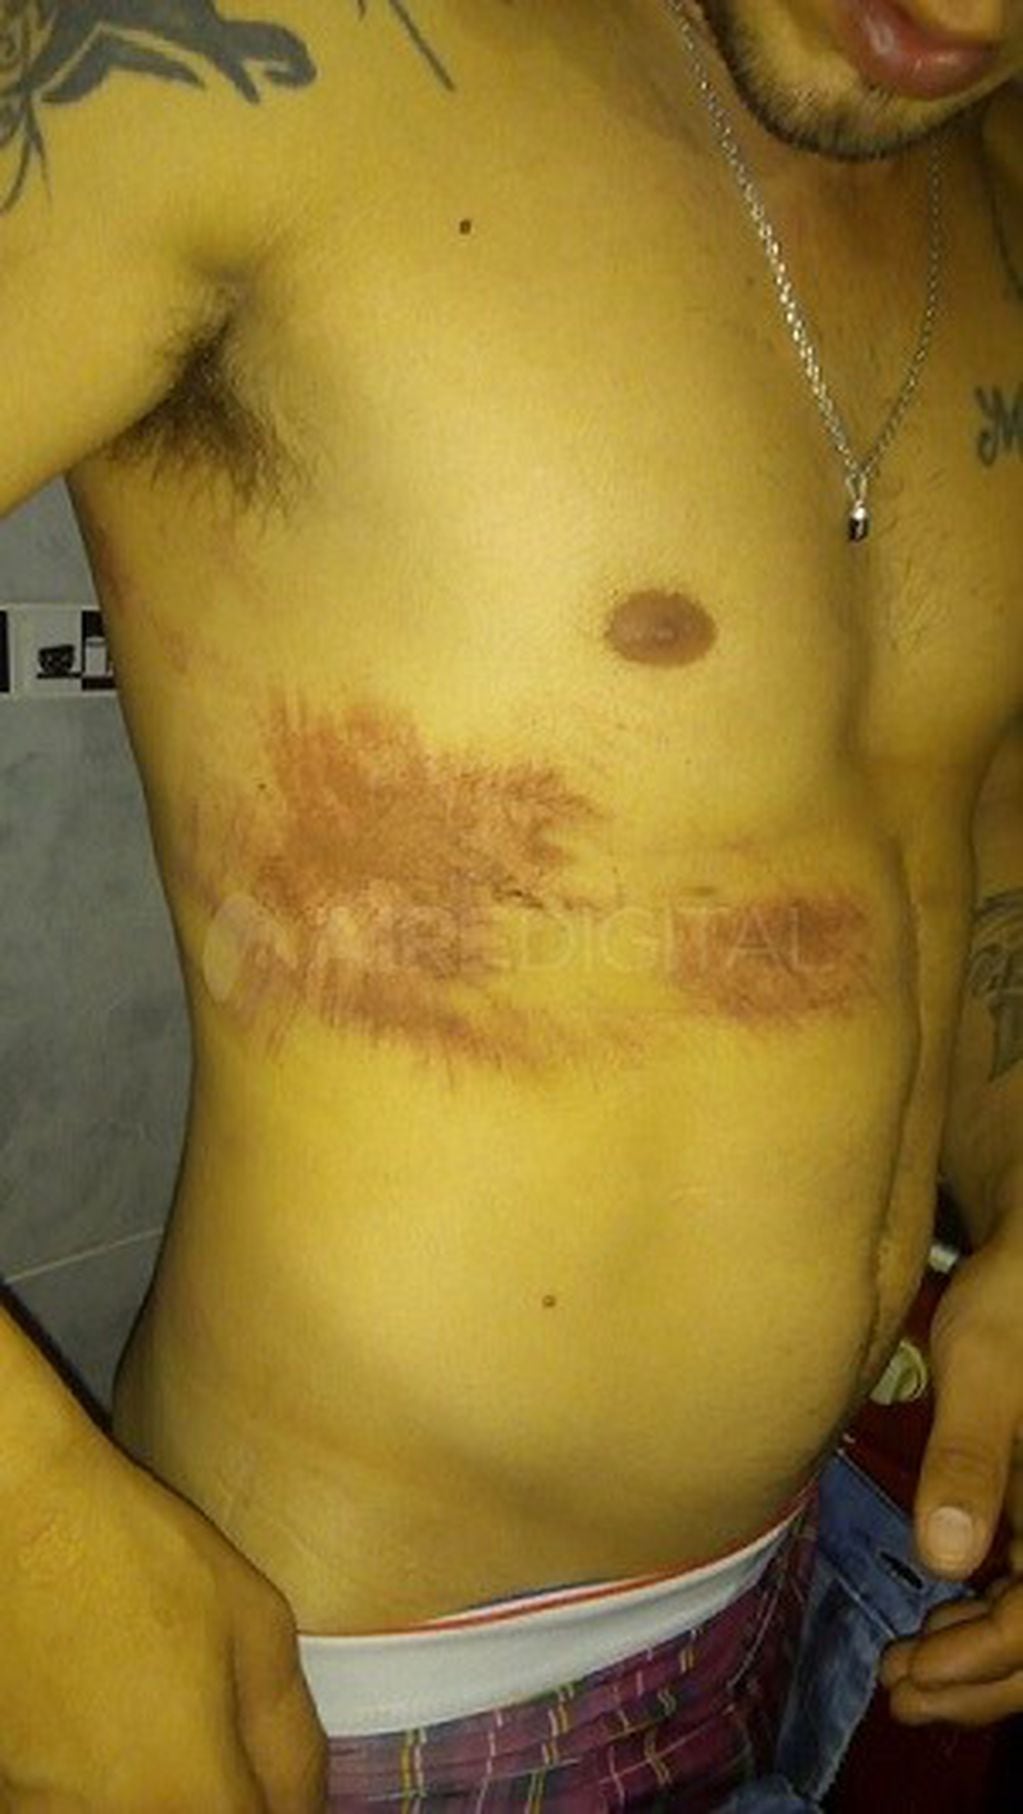 Las lesiones que mostró uno de los jóvenes supuestamente agredidos por la policía.